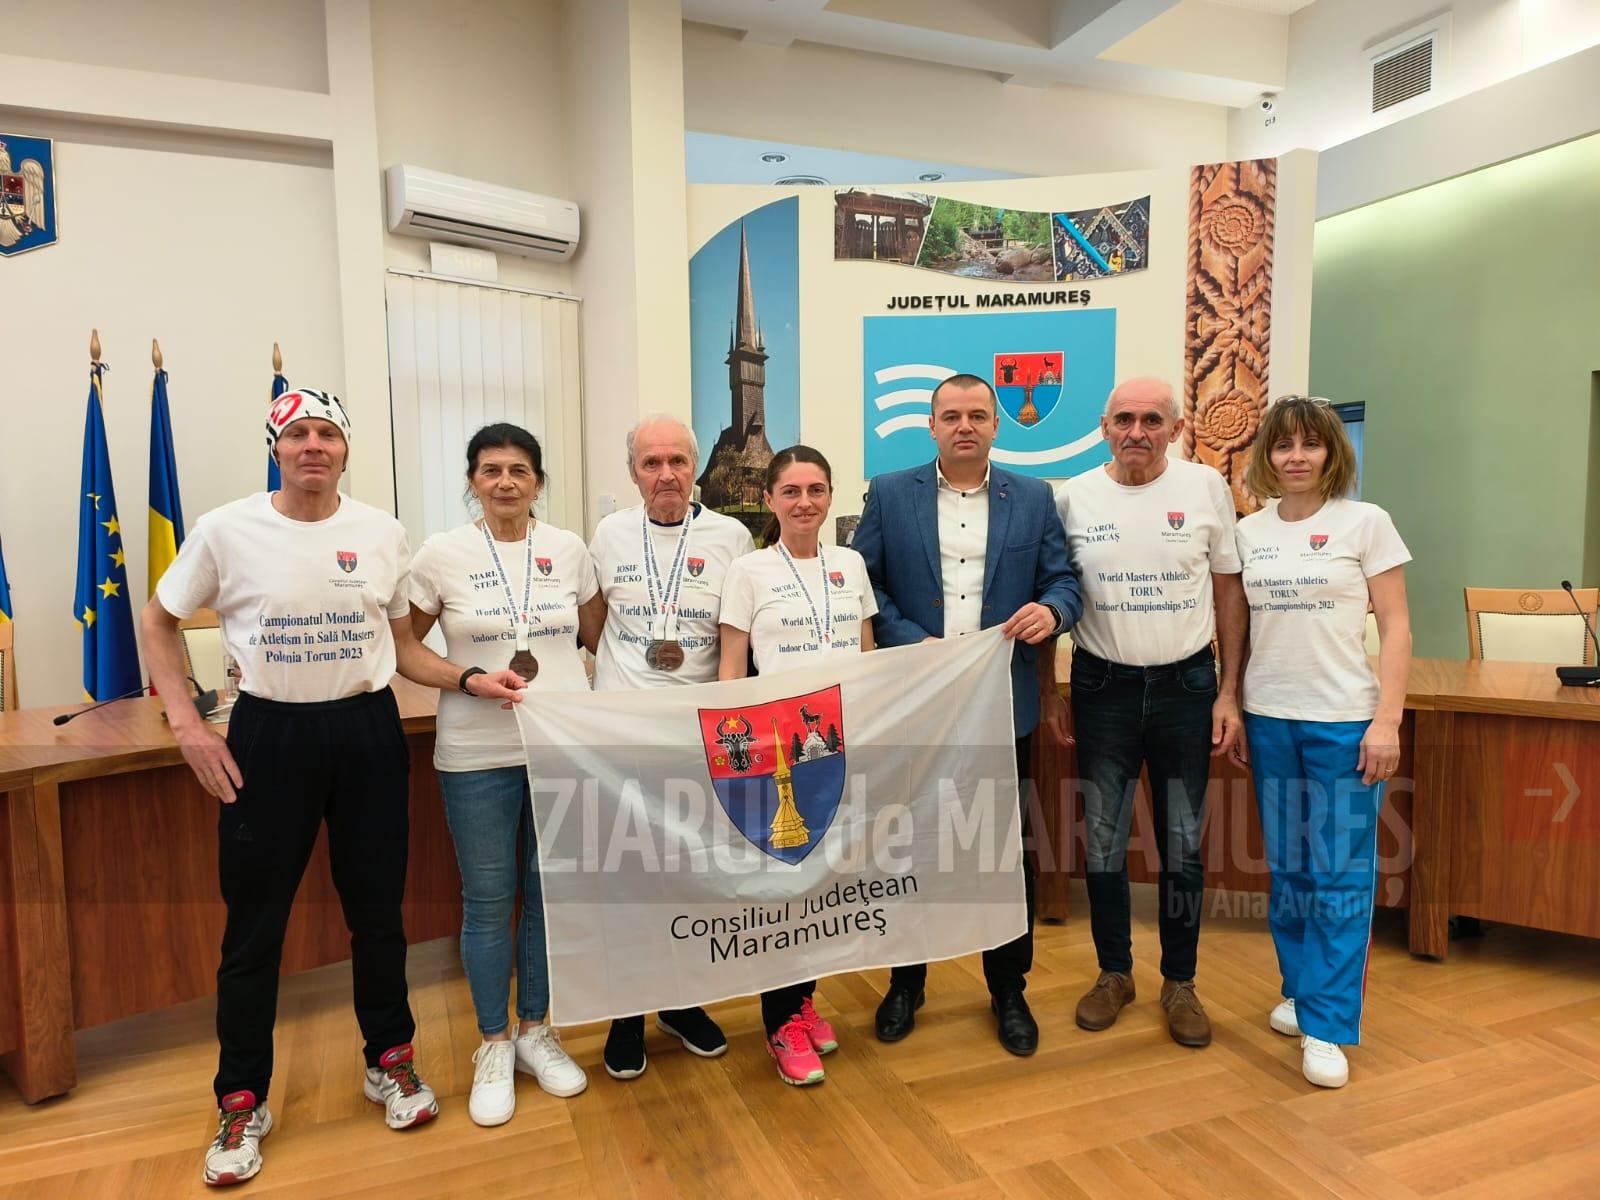 Radu Trufan: Felicit sportivii care au făcut cunoscut județul Maramureș la Campionatele Mondiale de Atletism în Sală